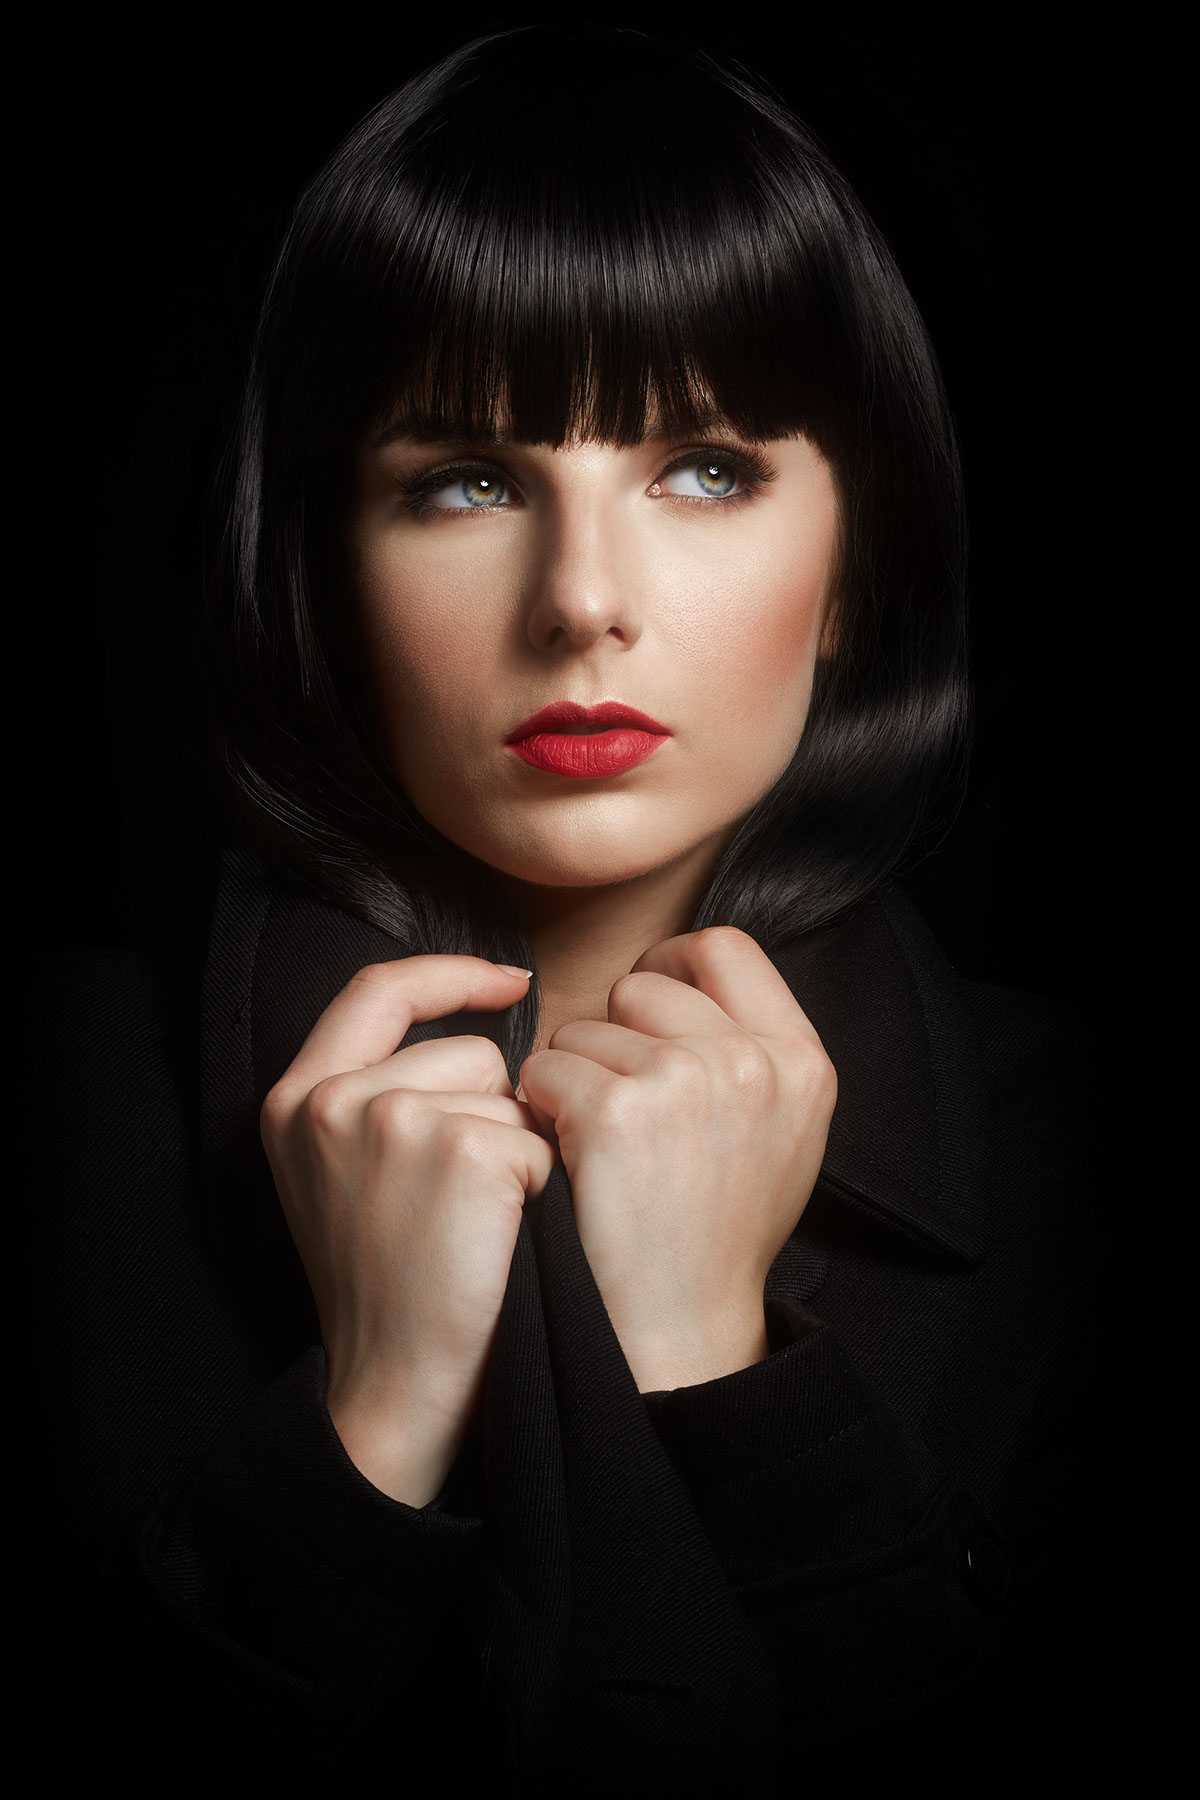 beauty photo retouch close-up portrait red texture skin details digital Photoedit edit concept